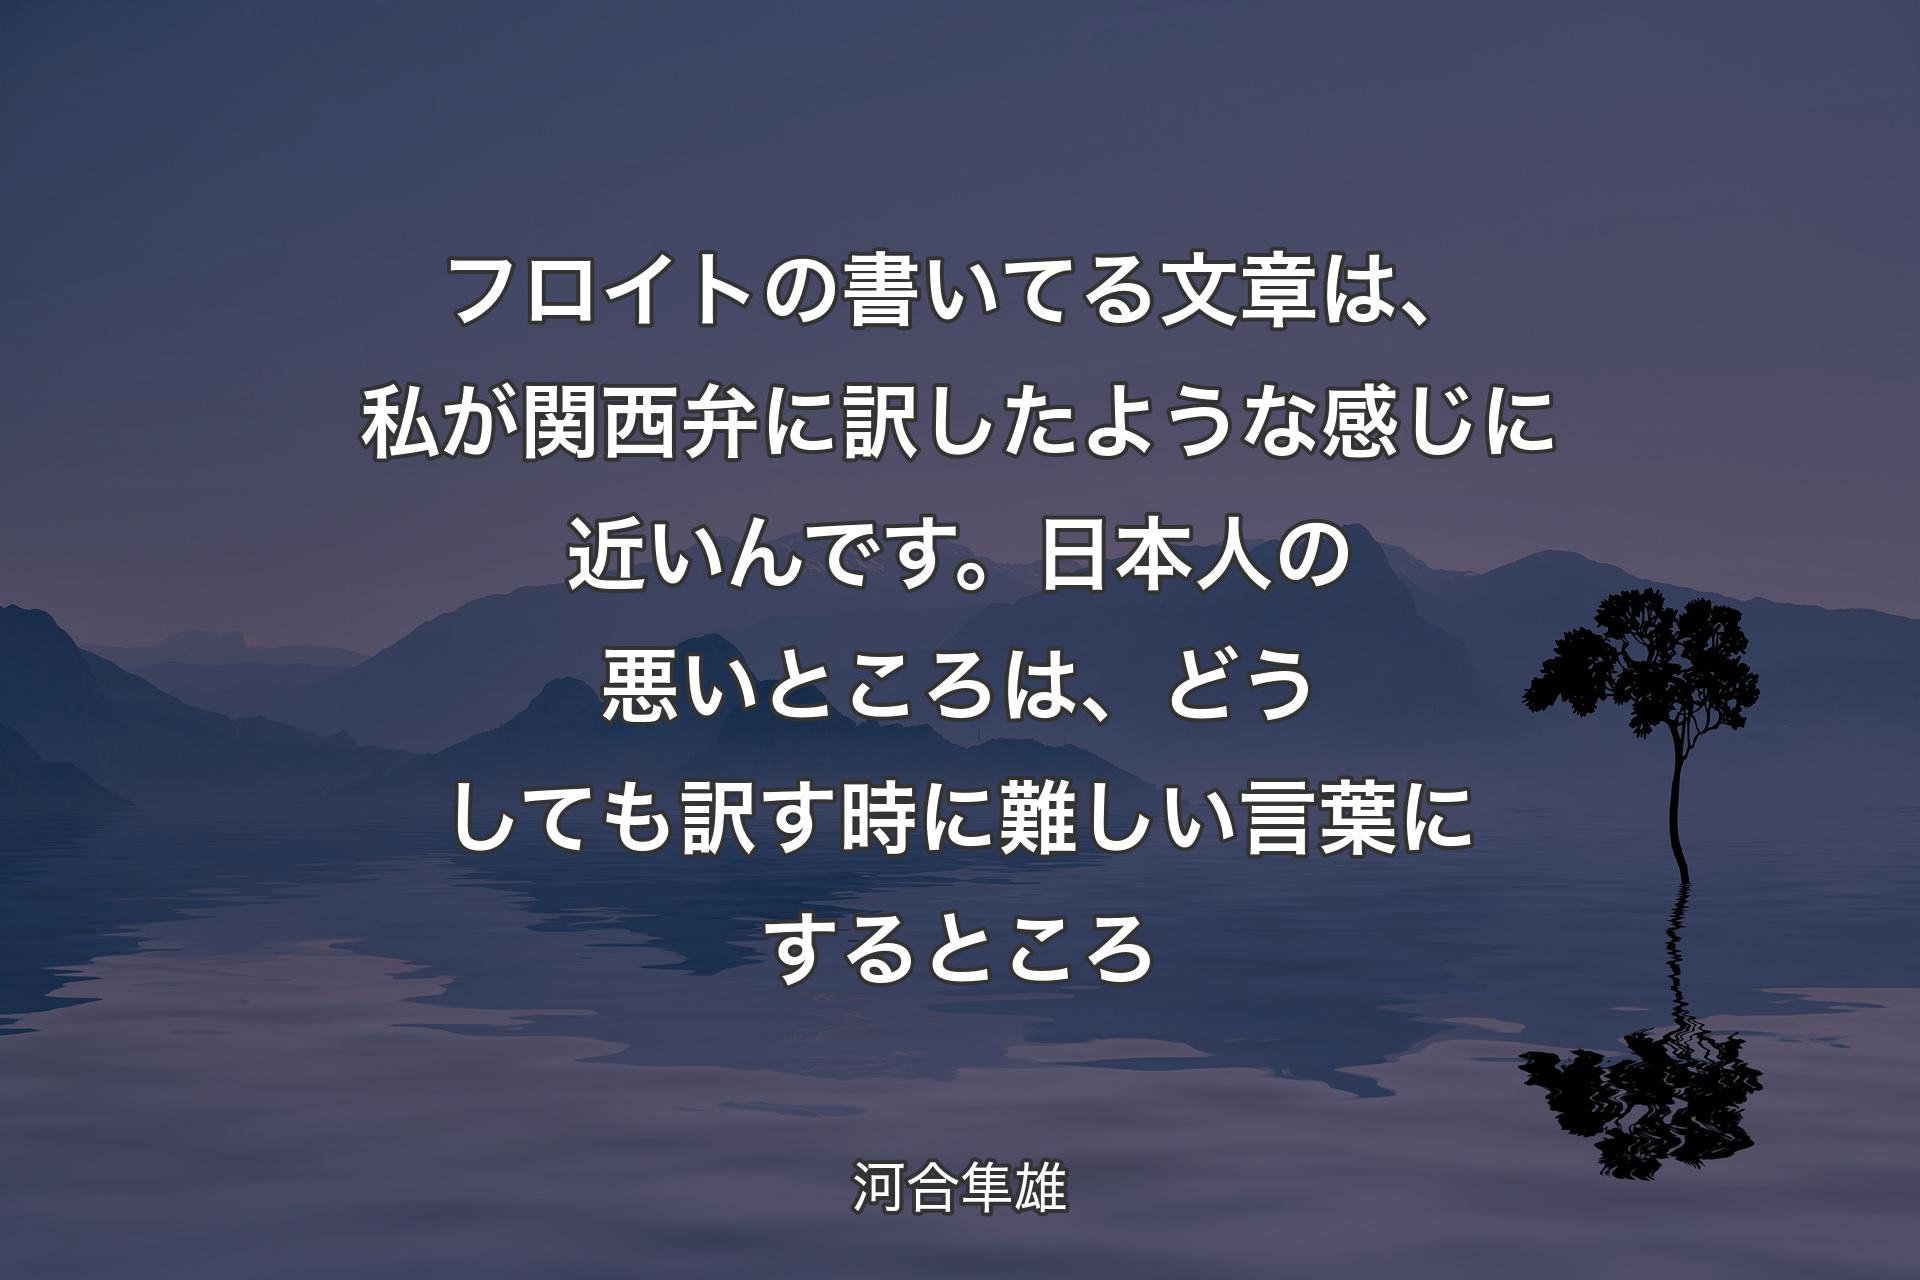 【背景4】フロイトの書いてる文章は、私が関西弁に訳したような感じに近いんです。日本人の悪いところは、どうしても訳す時に難しい言葉にするところ - 河合隼雄